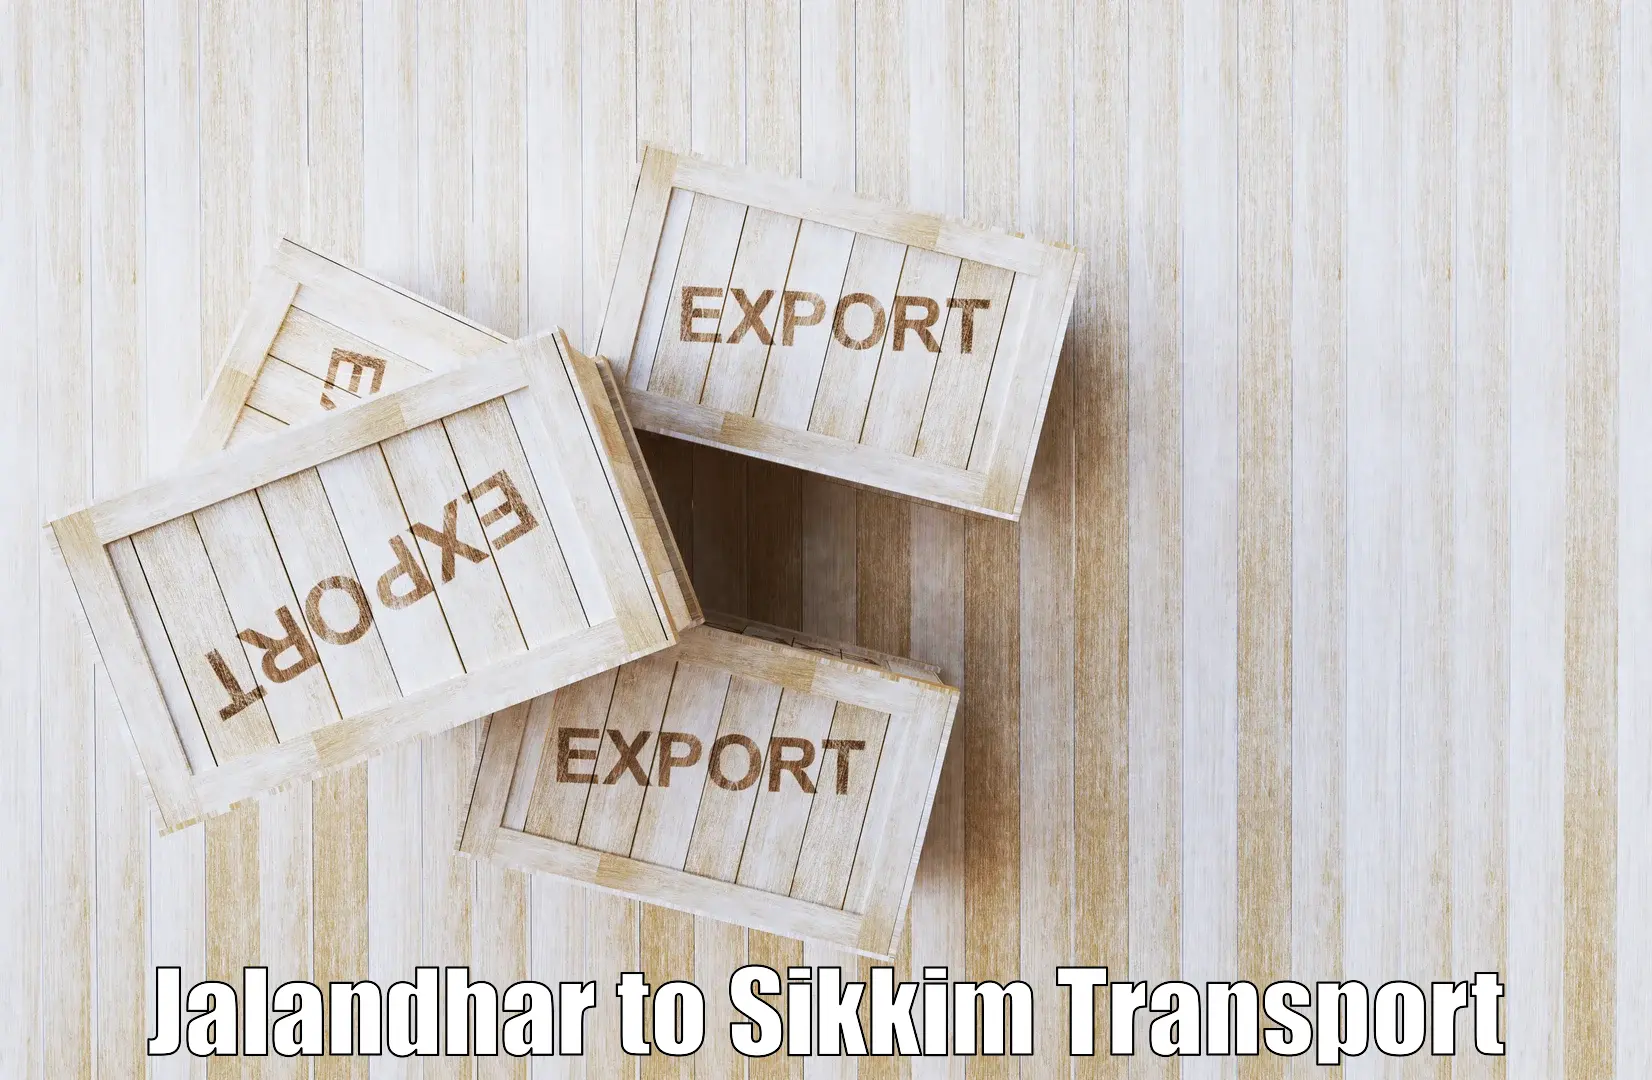 Road transport online services Jalandhar to West Sikkim